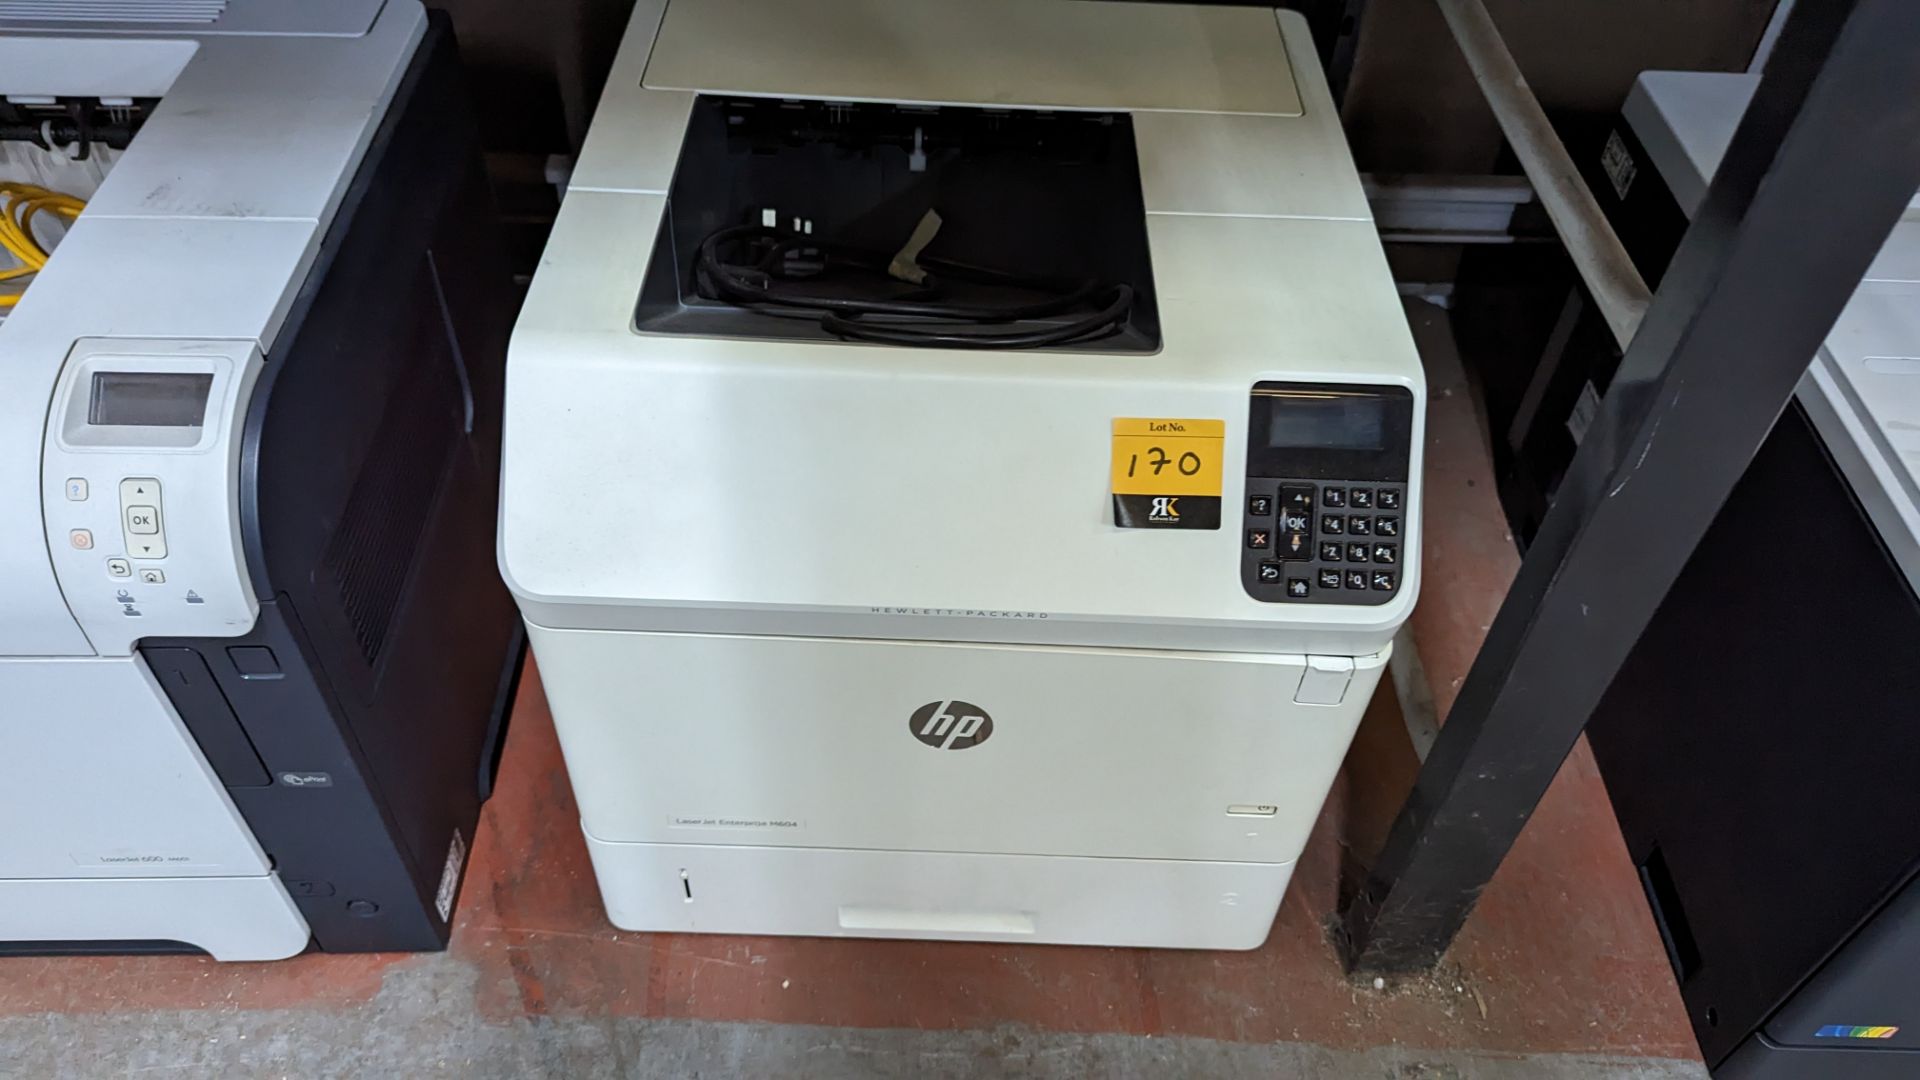 HP LaserJet Enterprise M604 printer - Image 6 of 6